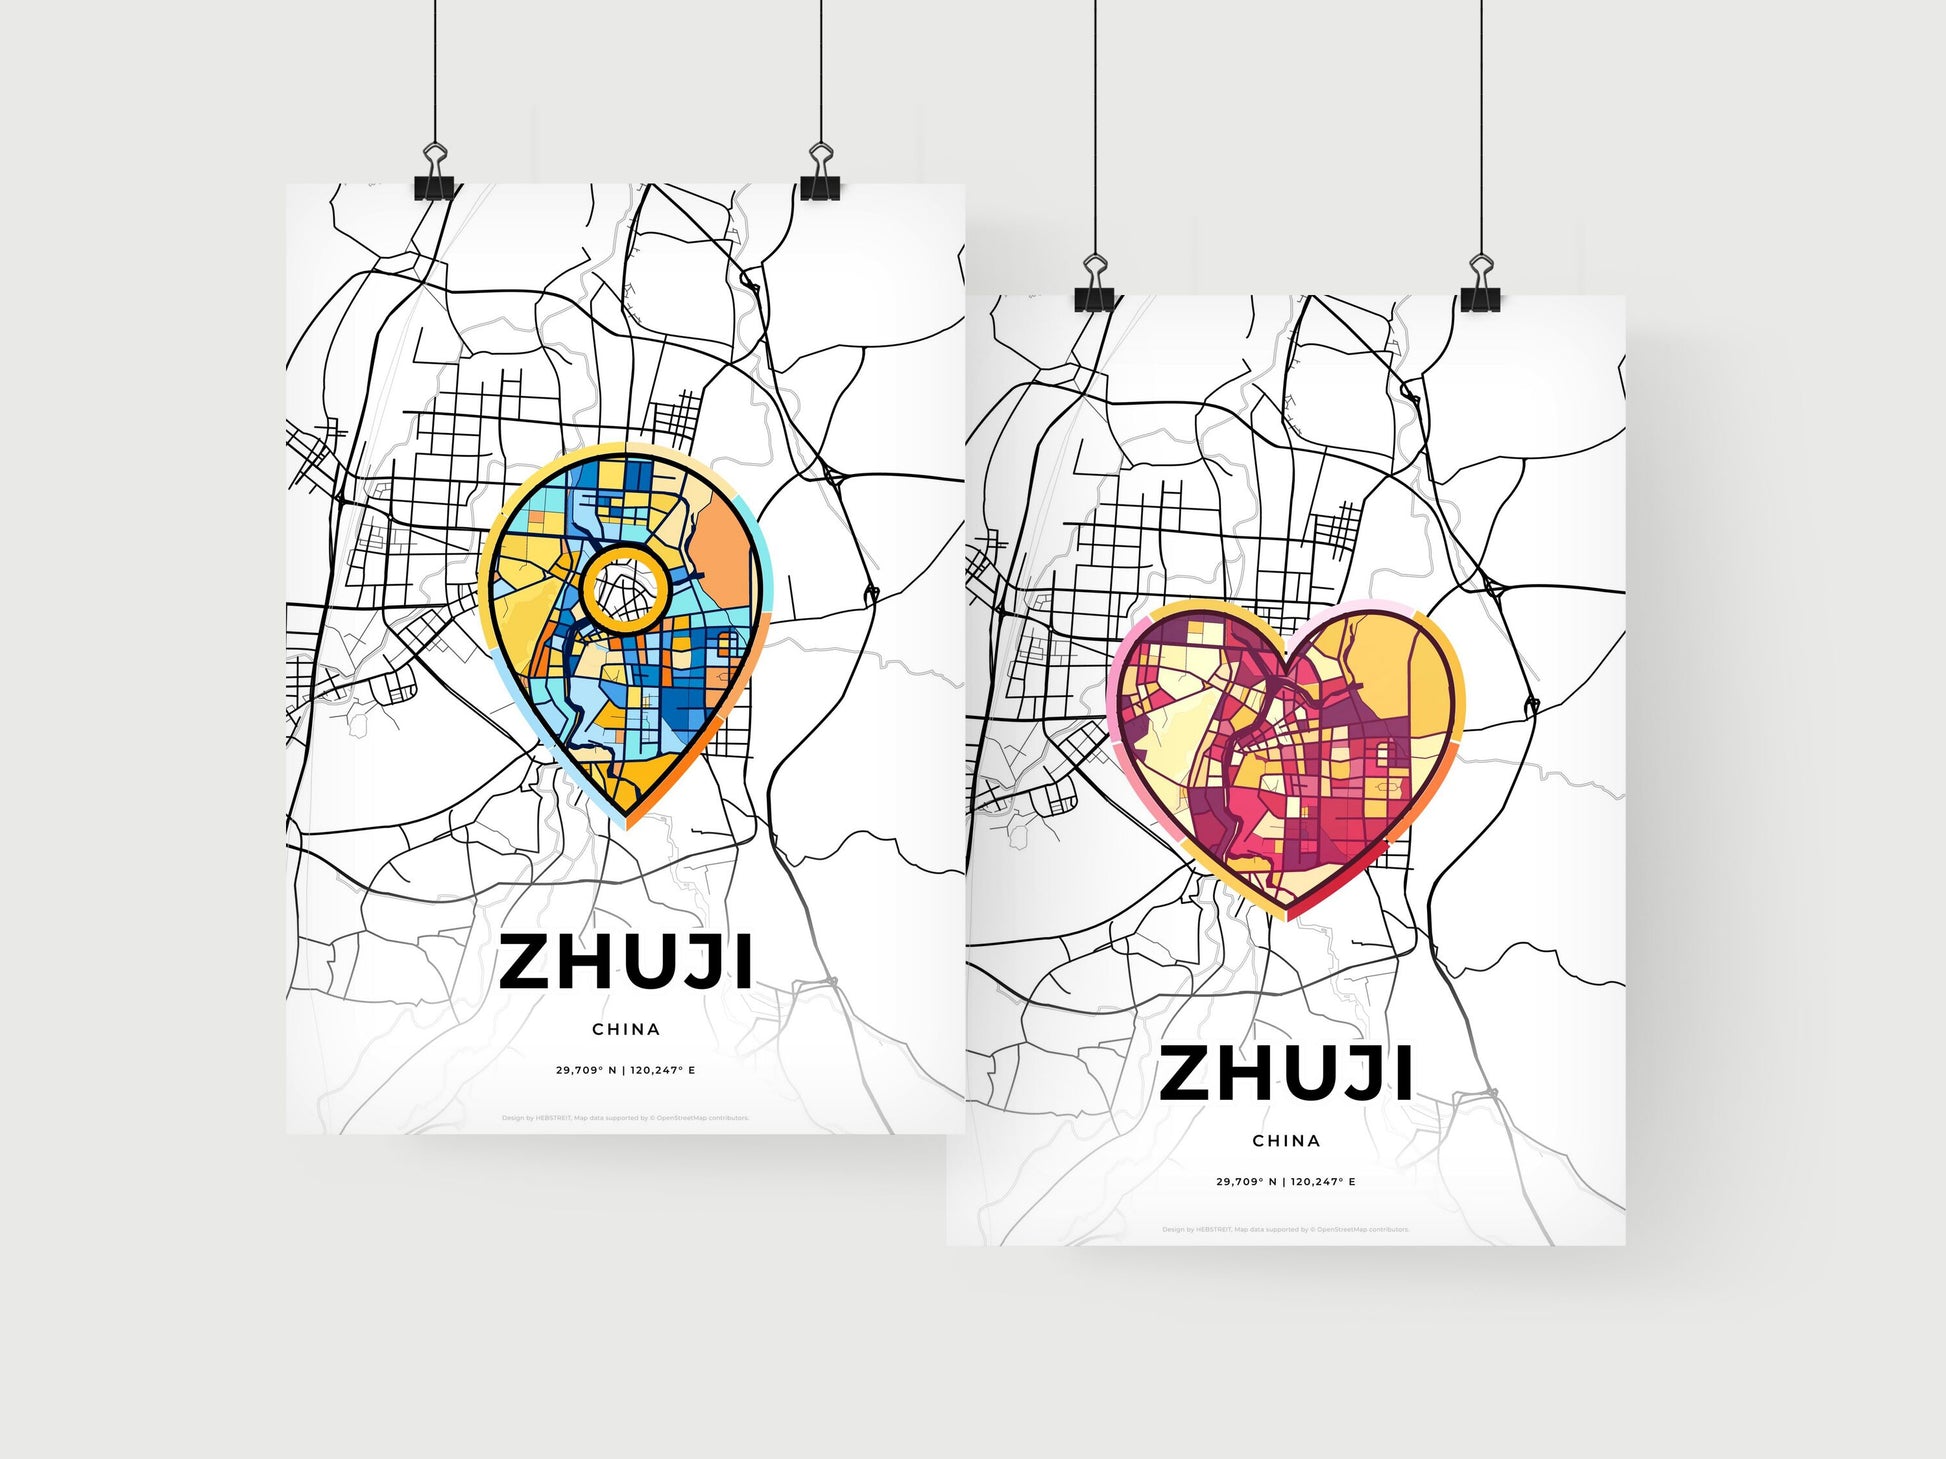 ZHUJI CHINA minimal art map with a colorful icon.